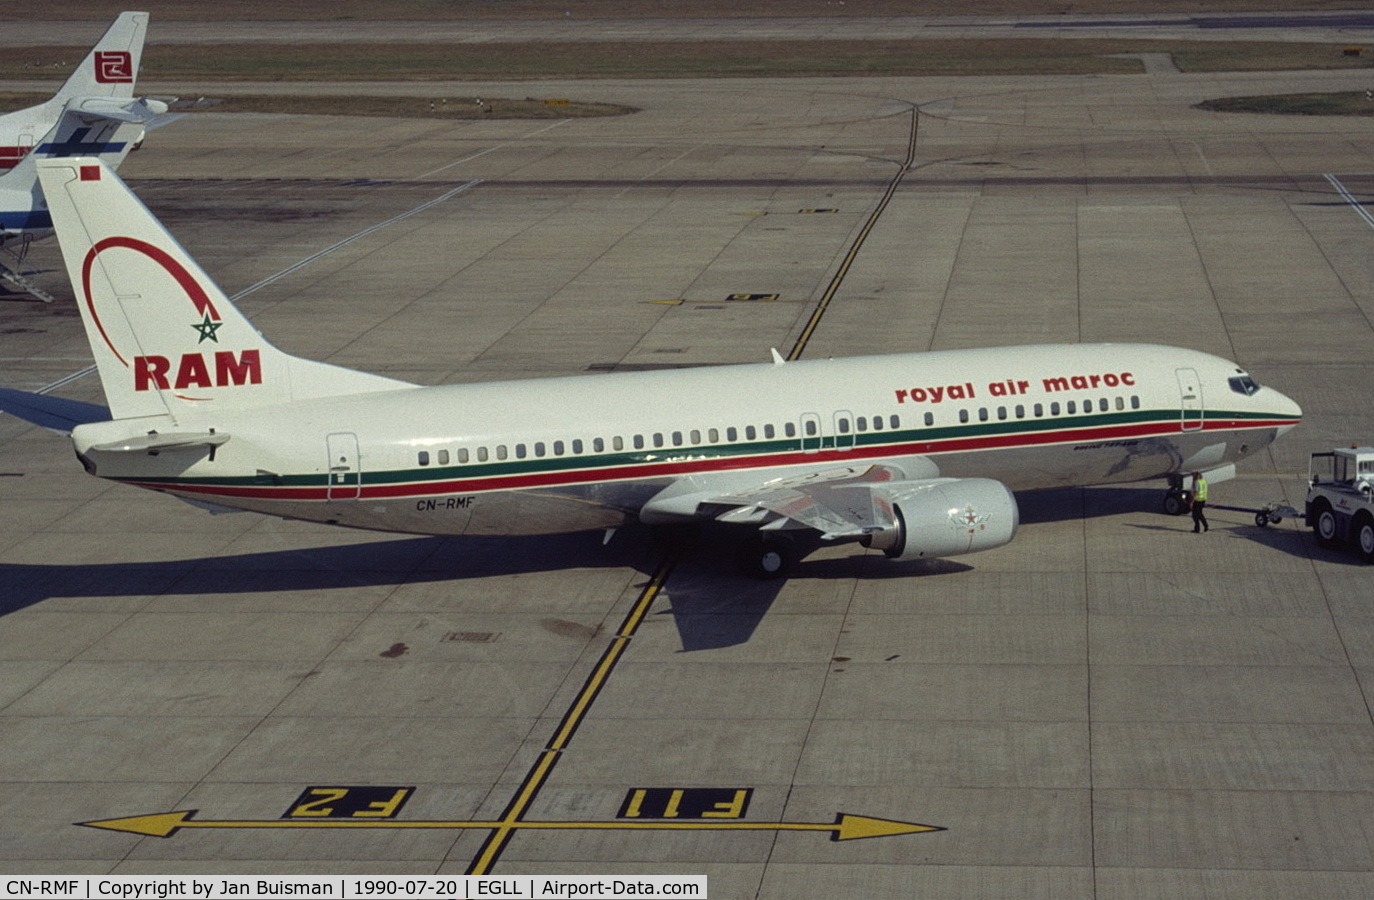 CN-RMF, 1990 Boeing 737-4B6 C/N 24807-1880, Royal Air Maroc